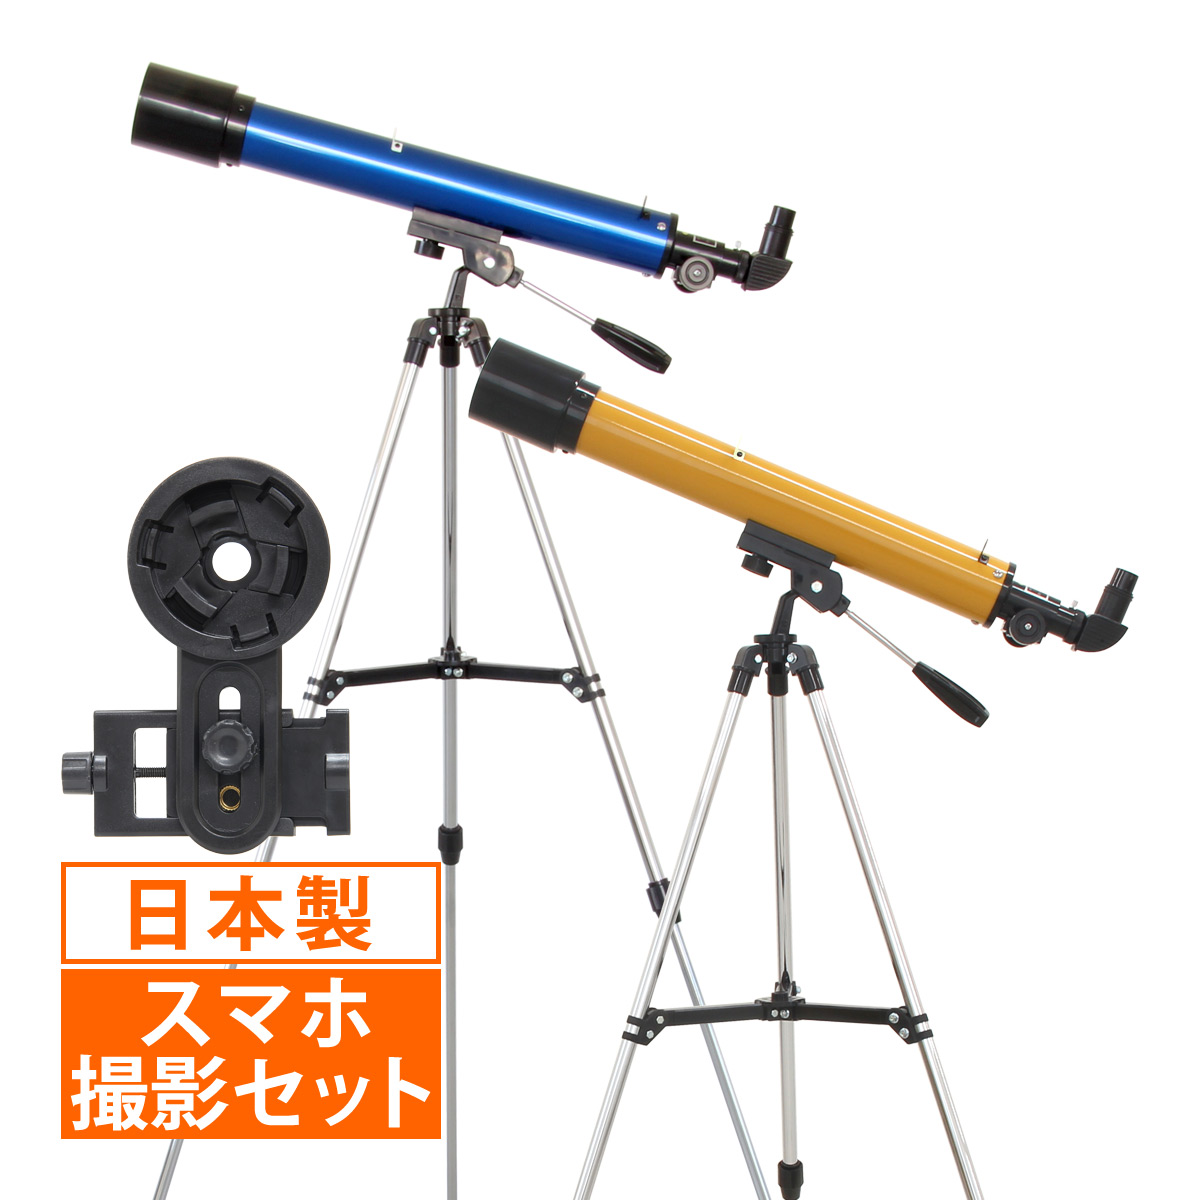 天体望遠鏡 スマホ対応 初心者用 望遠鏡 天体 子供用 レグルス60 口径60mm 天体ガイドブック付き 日本製 カメラアダプター 屈折式  :sv-66:ルーペスタジオ 通販 